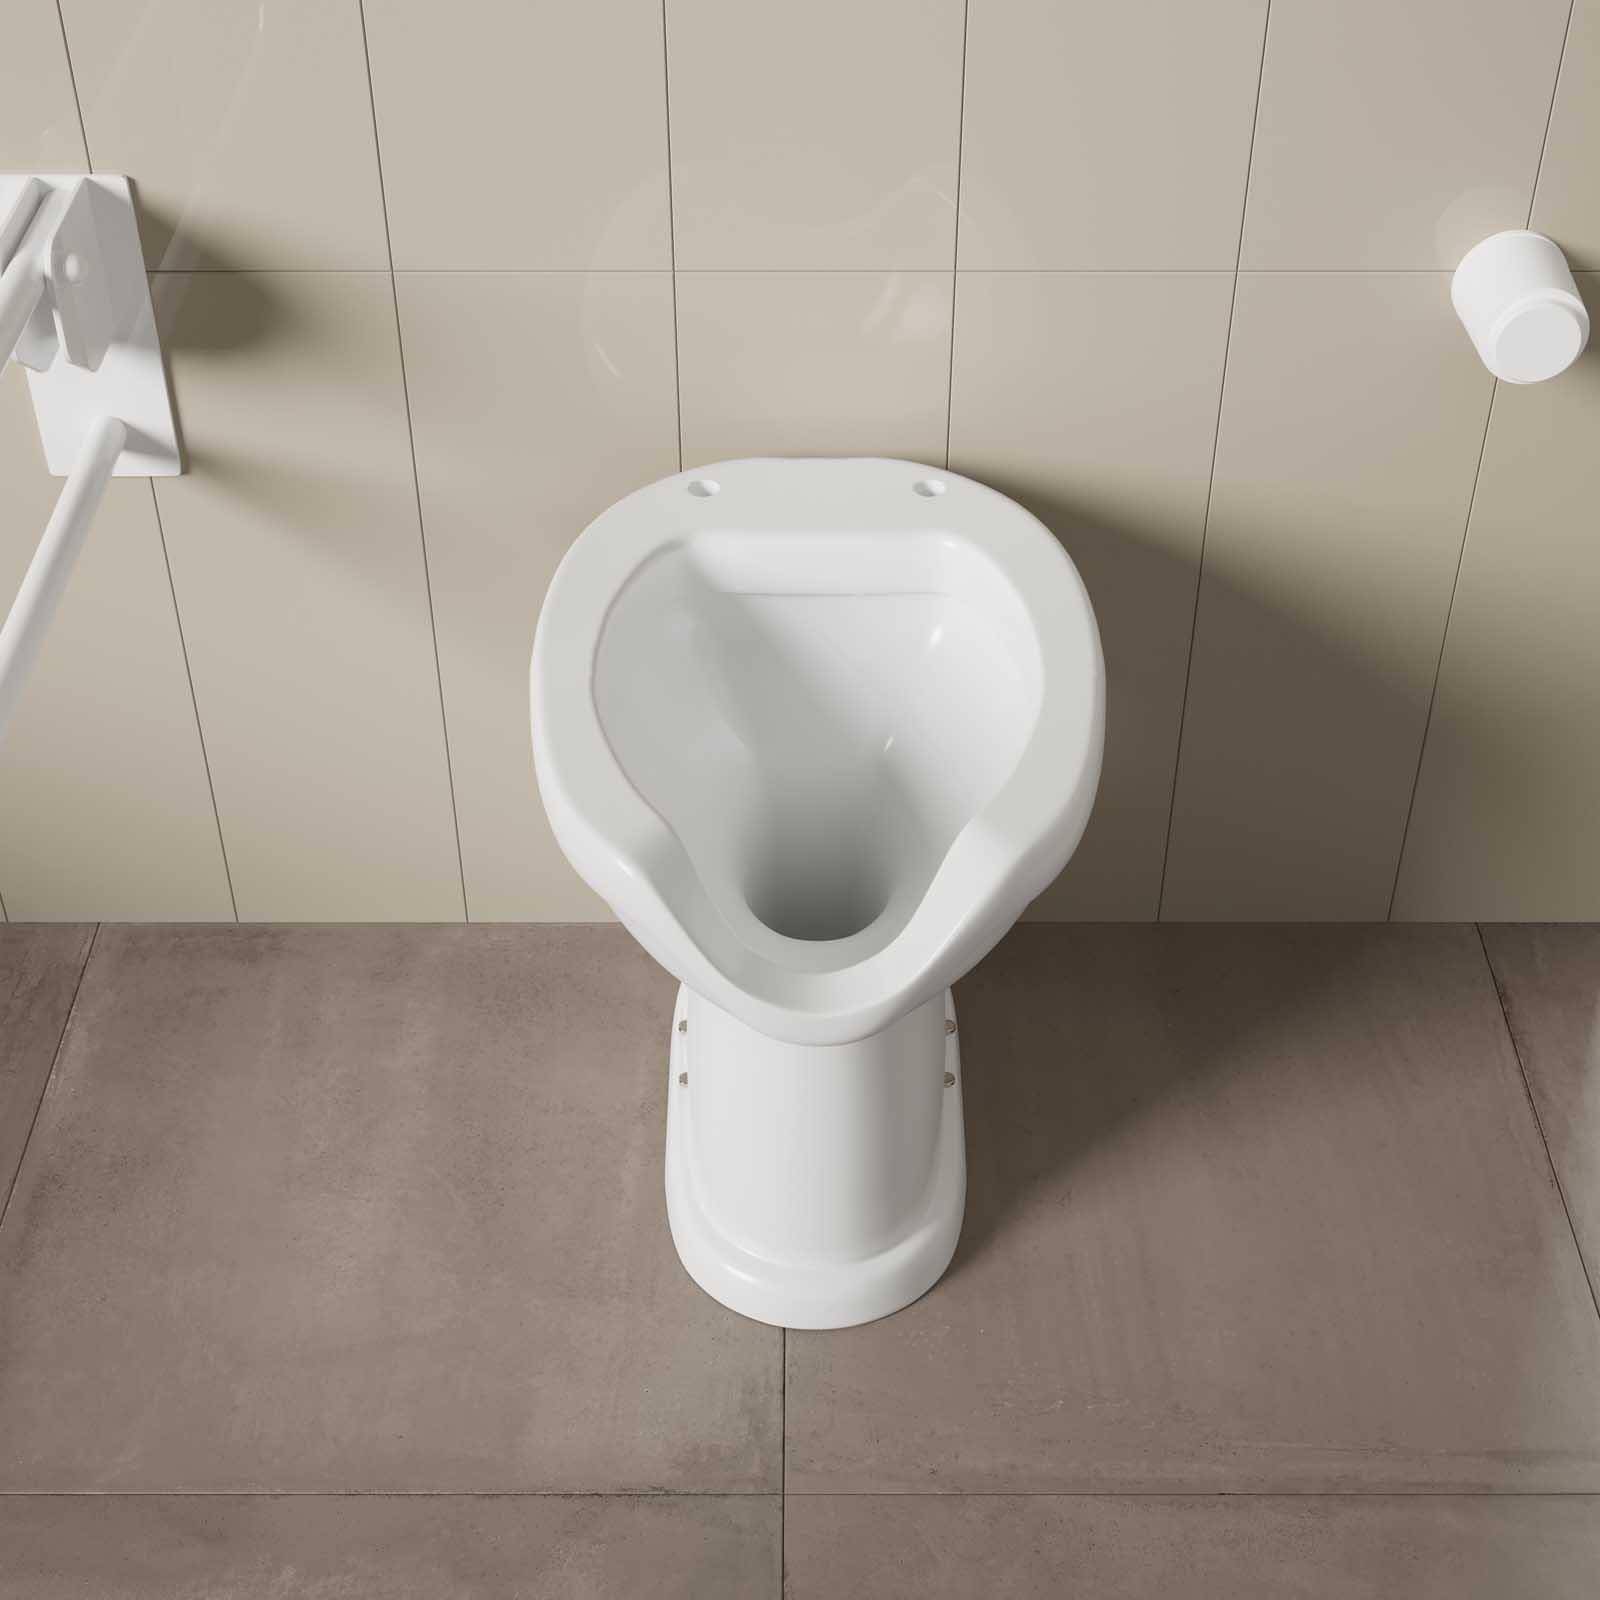 Vaso WC disabili, con apertura frontale, scarico a pavimento - Grassia srl